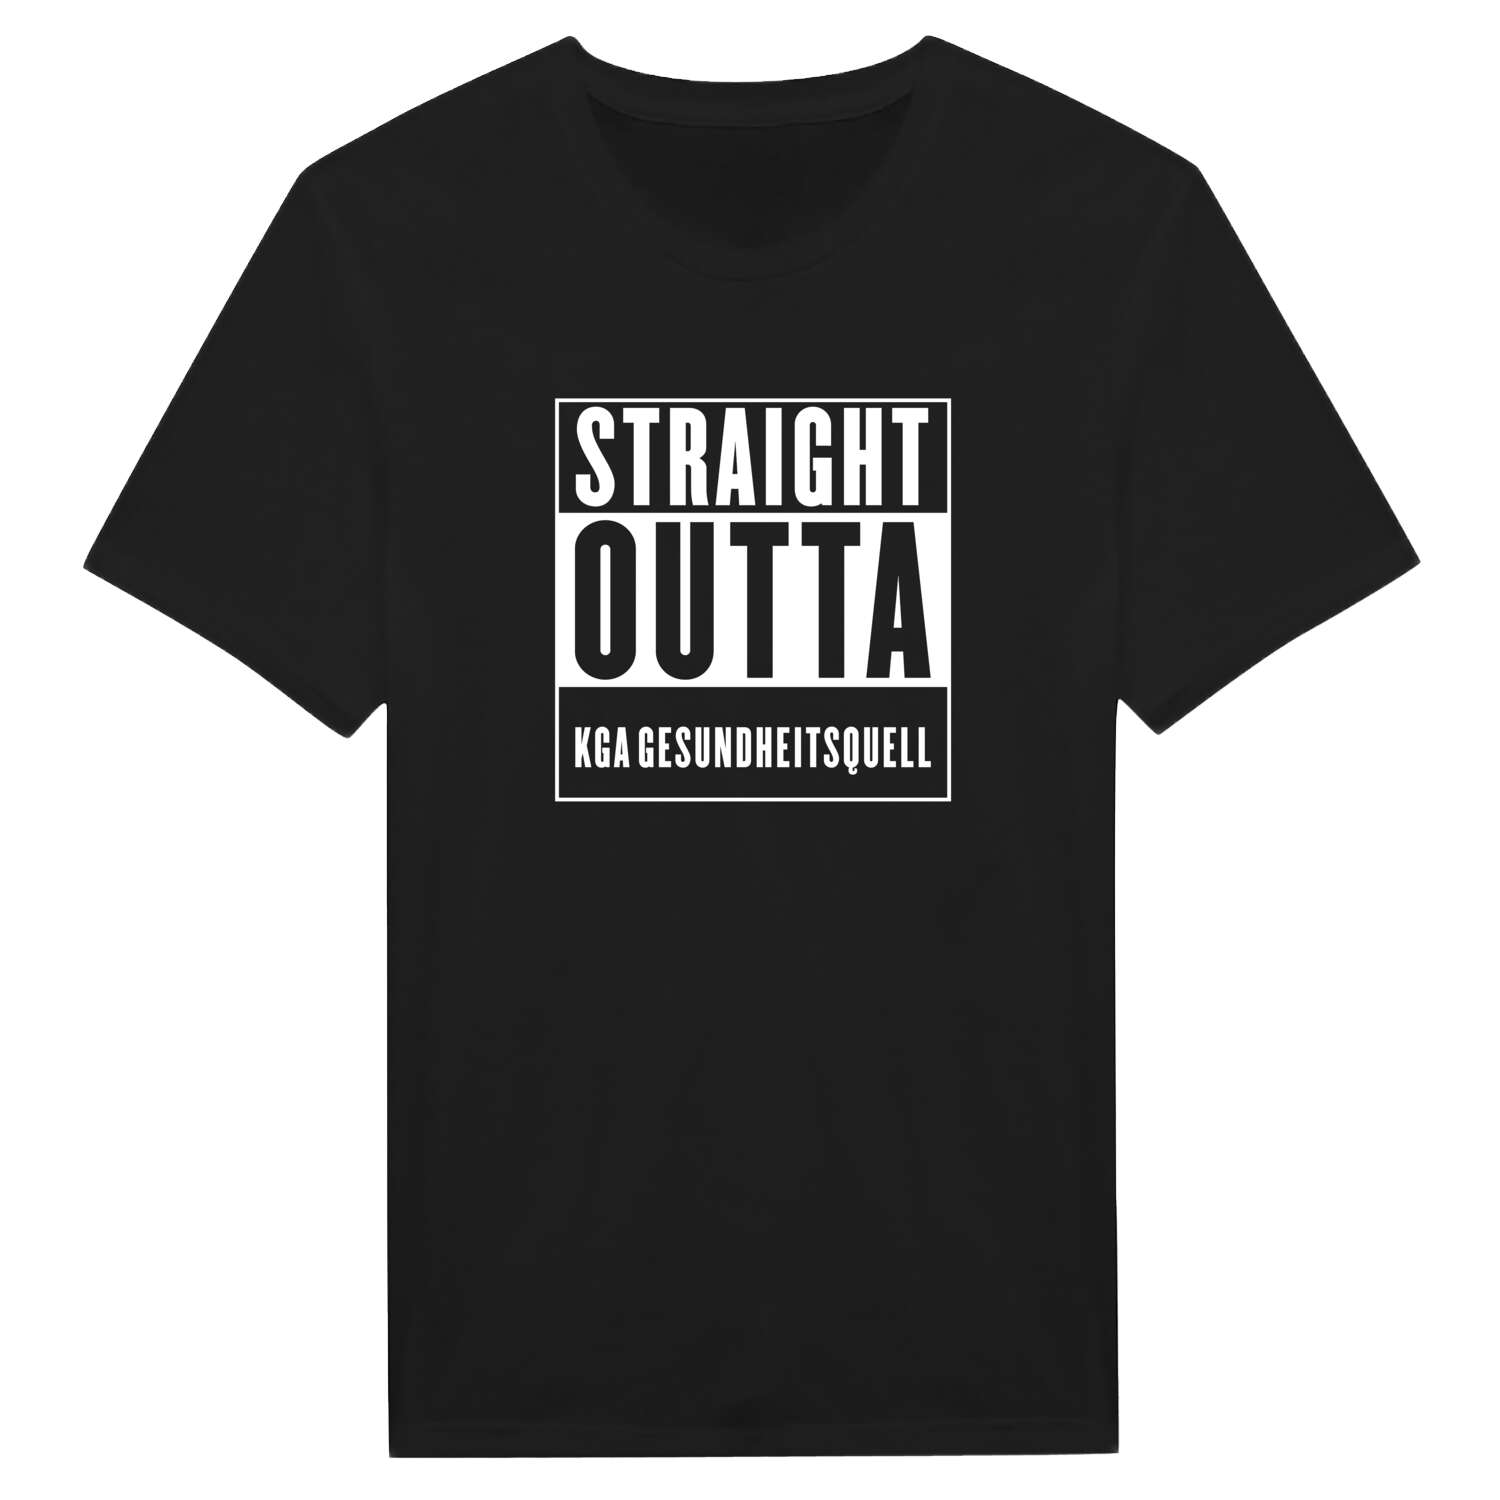 KGA Gesundheitsquell T-Shirt »Straight Outta«